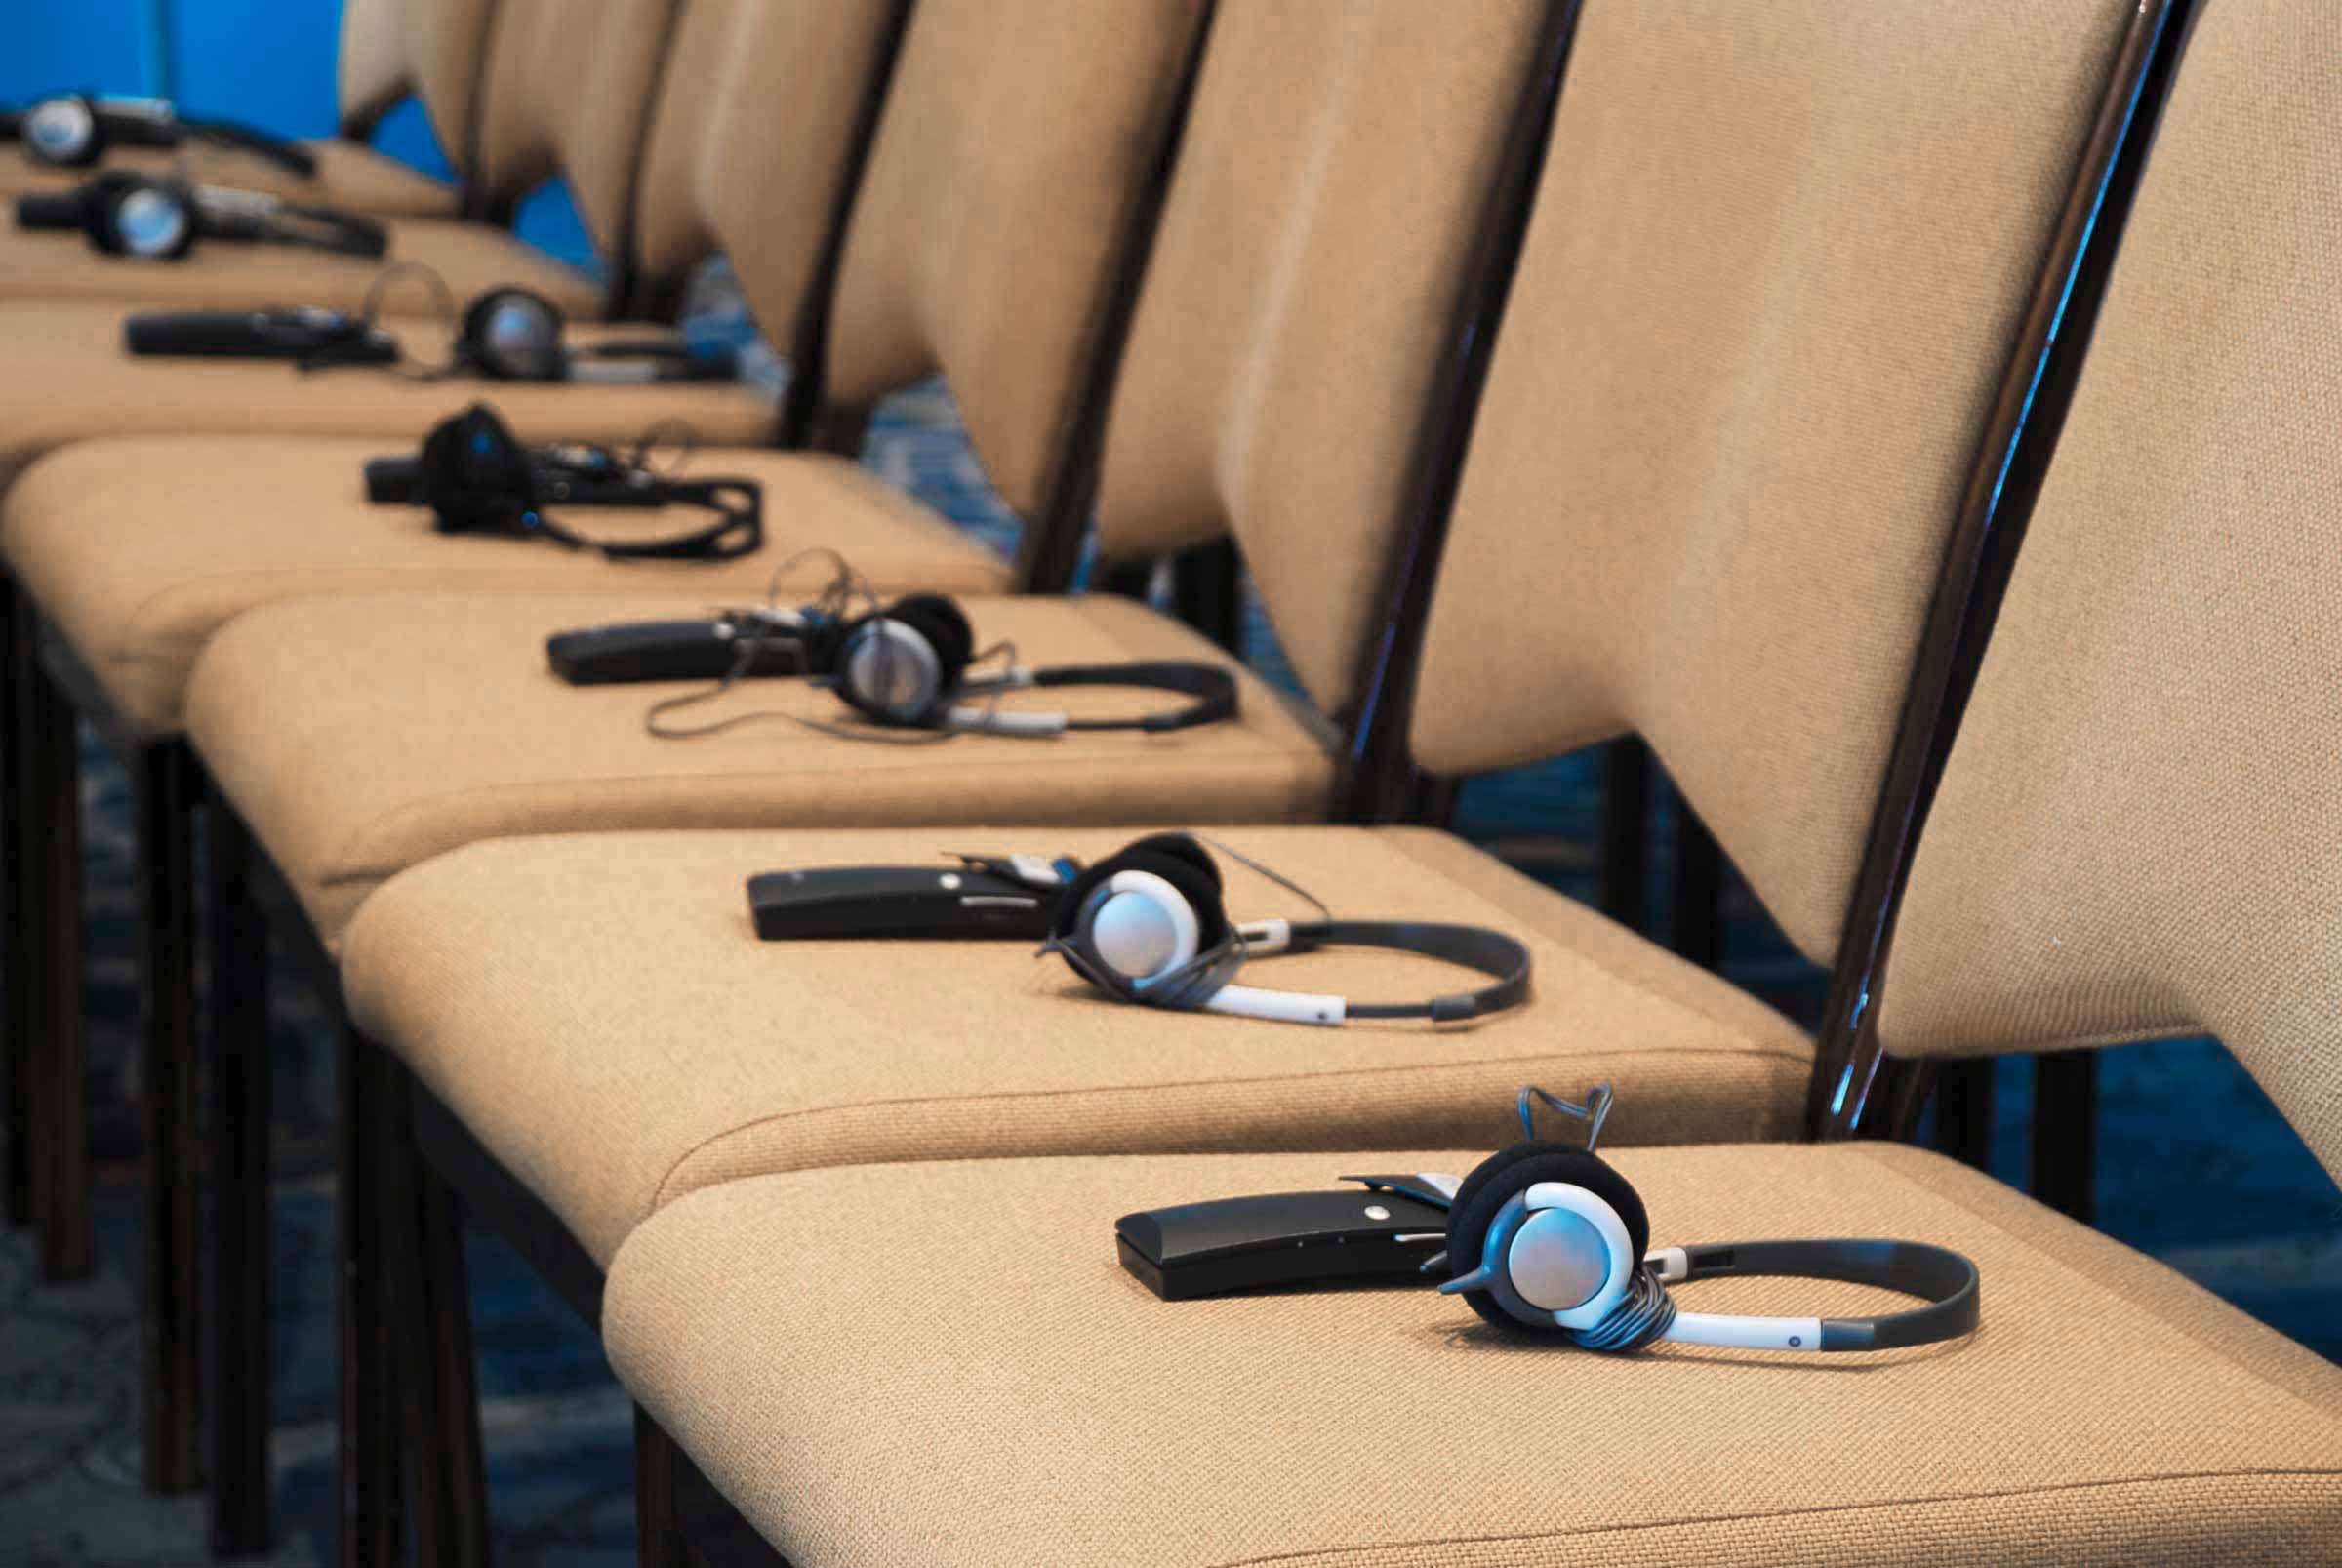 Nahaufnahme einer Stuhlreihe bei einer Konferenz. Auf jeder Sitzfläche liegt ein Empfangsgerät und ein Kopfhörer für den Empfang der Simultandverdolmetschung.